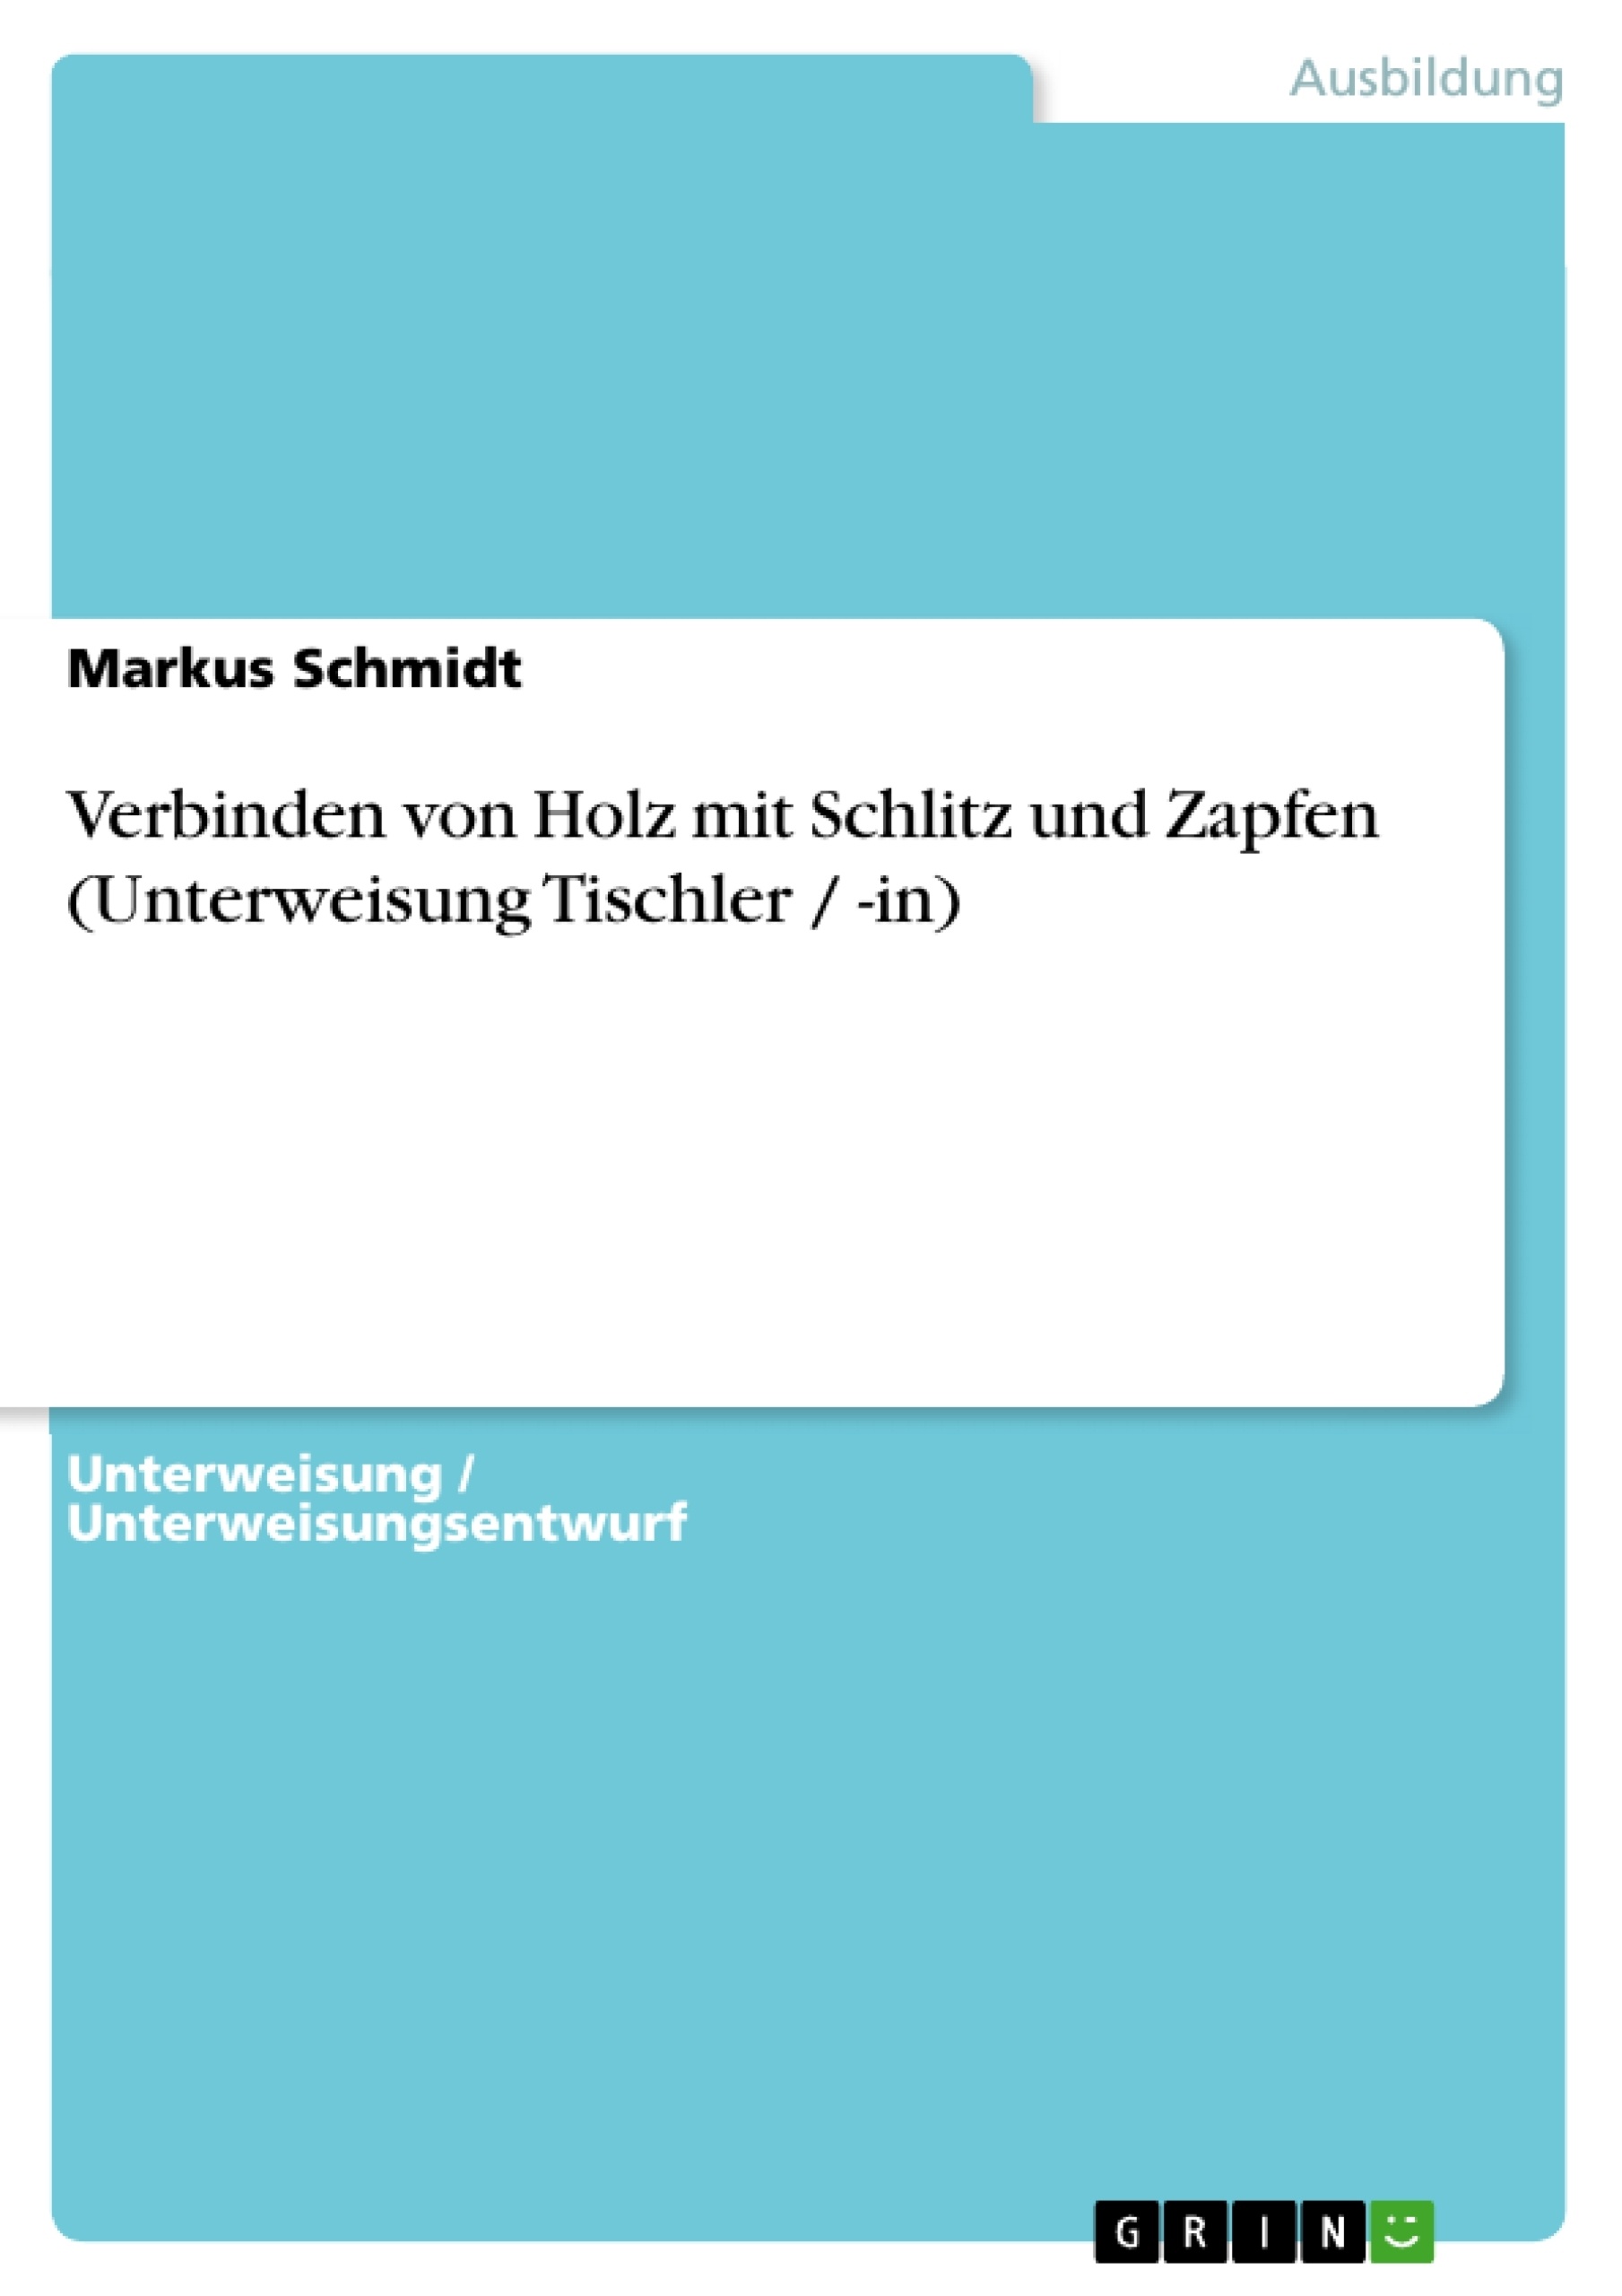 Title: Verbinden von Holz mit Schlitz und Zapfen (Unterweisung Tischler / -in)